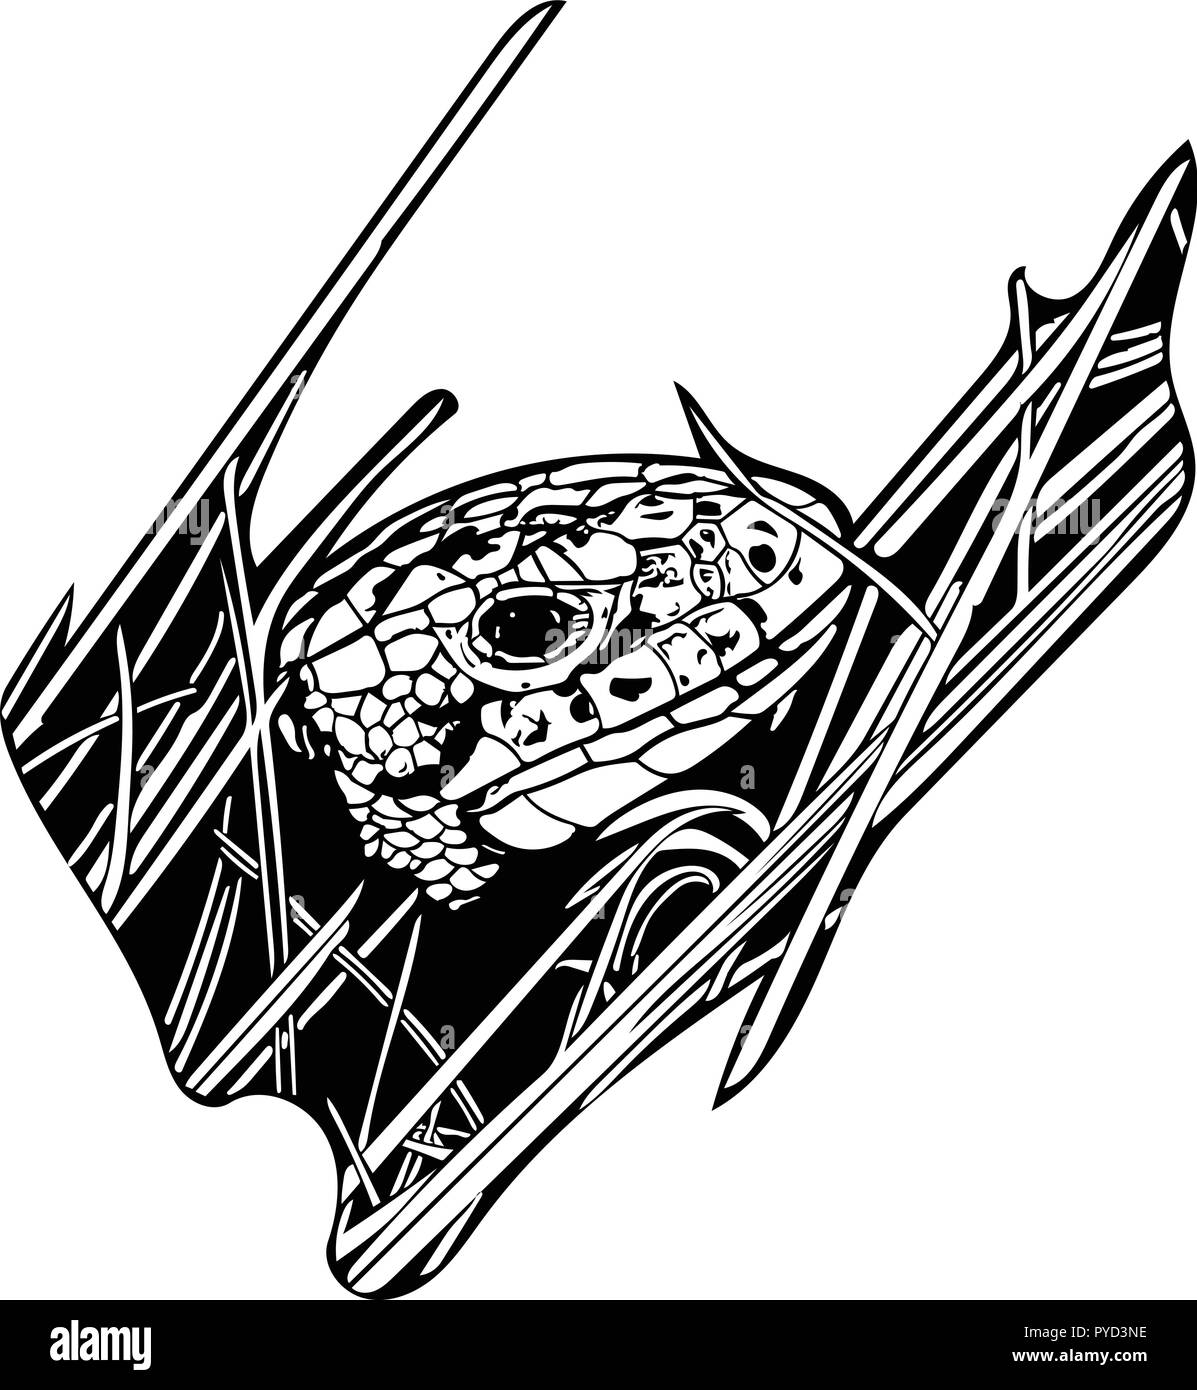 Graphique vectoriel noir et blanc femelle lézard de sable, à l'herbe révélant seulement sa tête Illustration de Vecteur